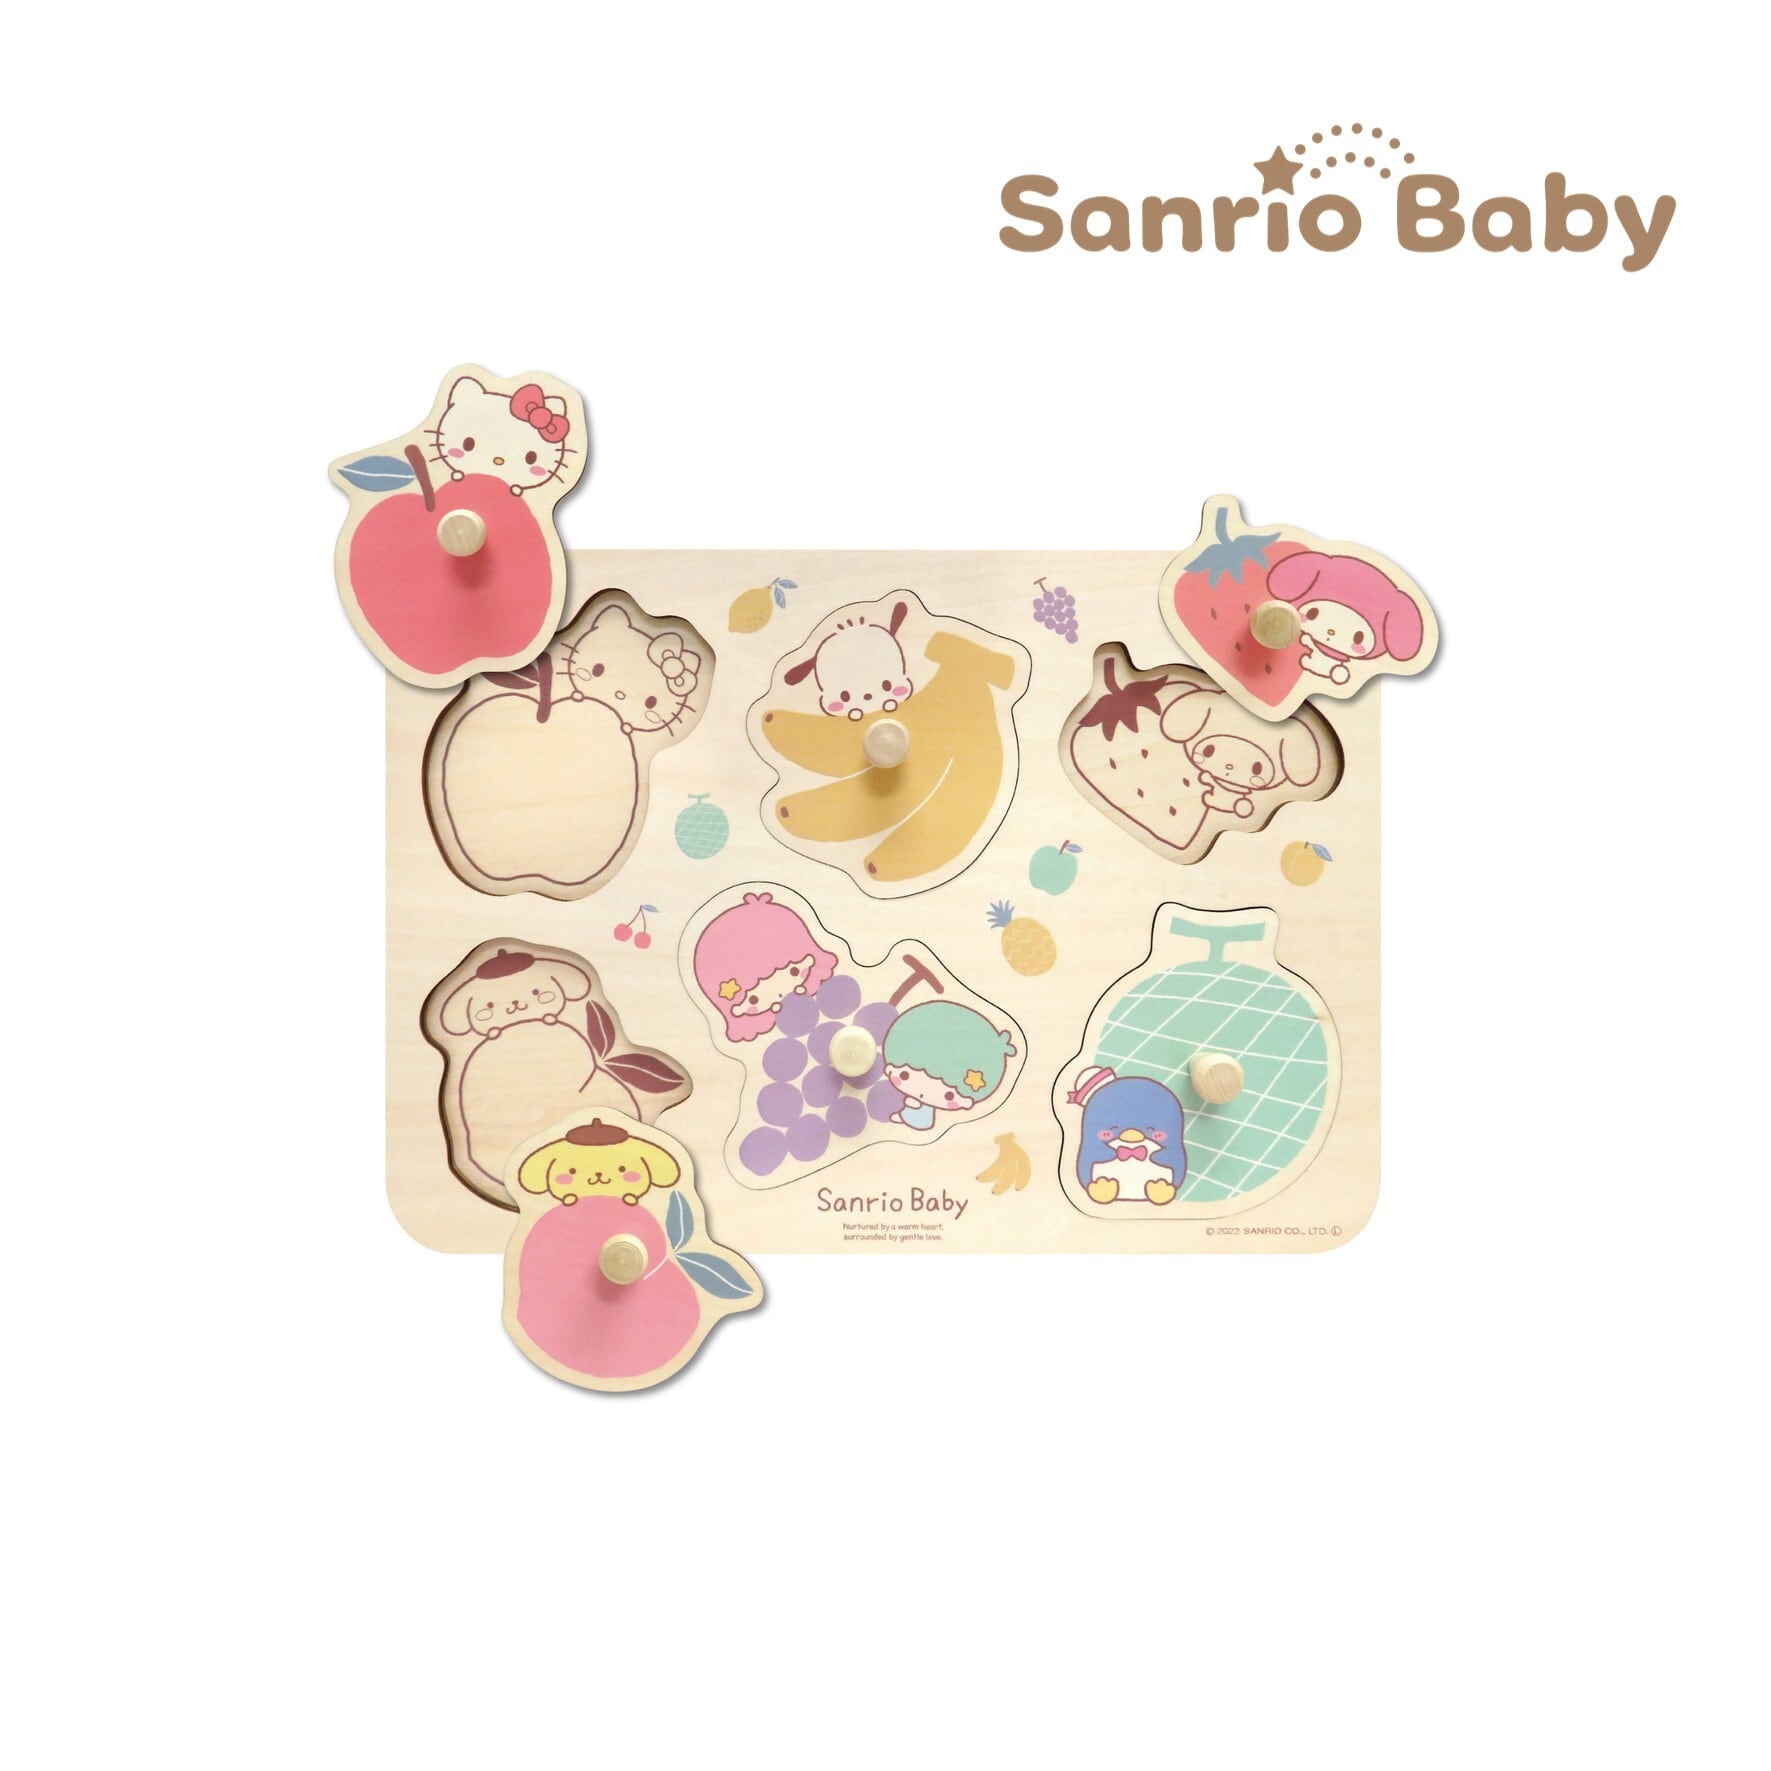 Sanrio baby / サンリオベビー フルーツパズル